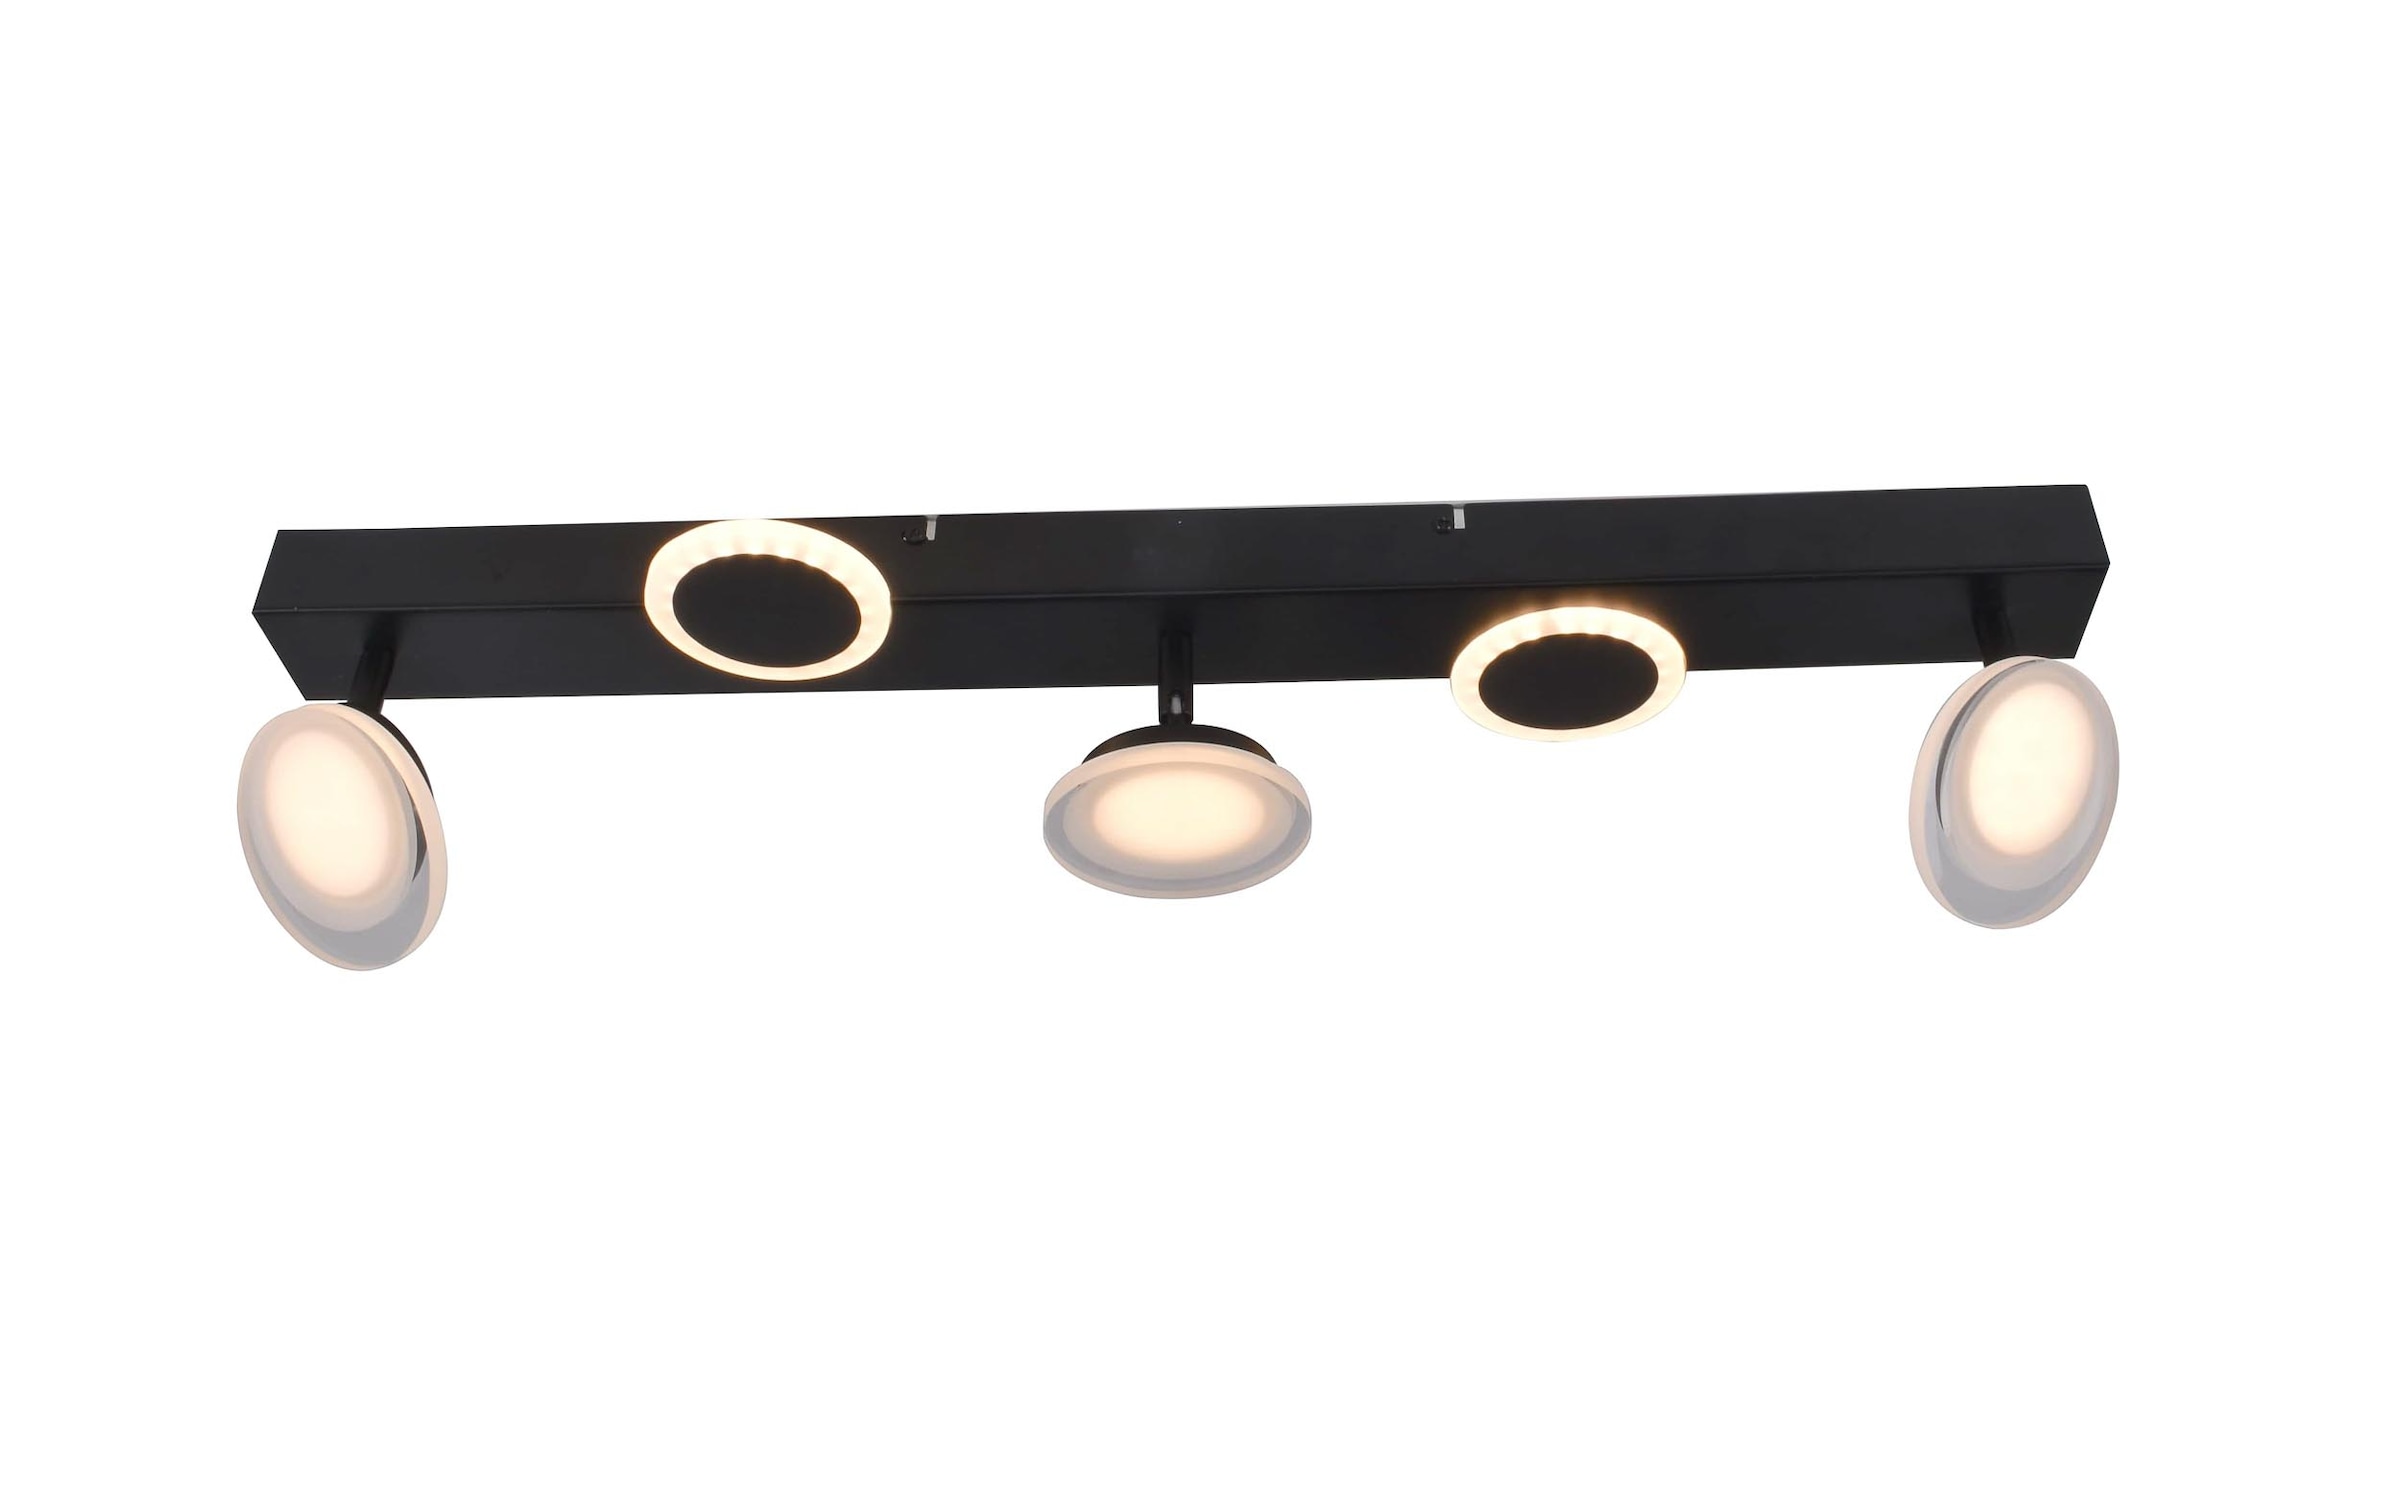 Brilliant LED Deckenstrahler »Meriza«, 3 flammig, 70 cm Breite, 2800lm, warmweiß, schwenkbar, Metall/Kunststoff, schwarz